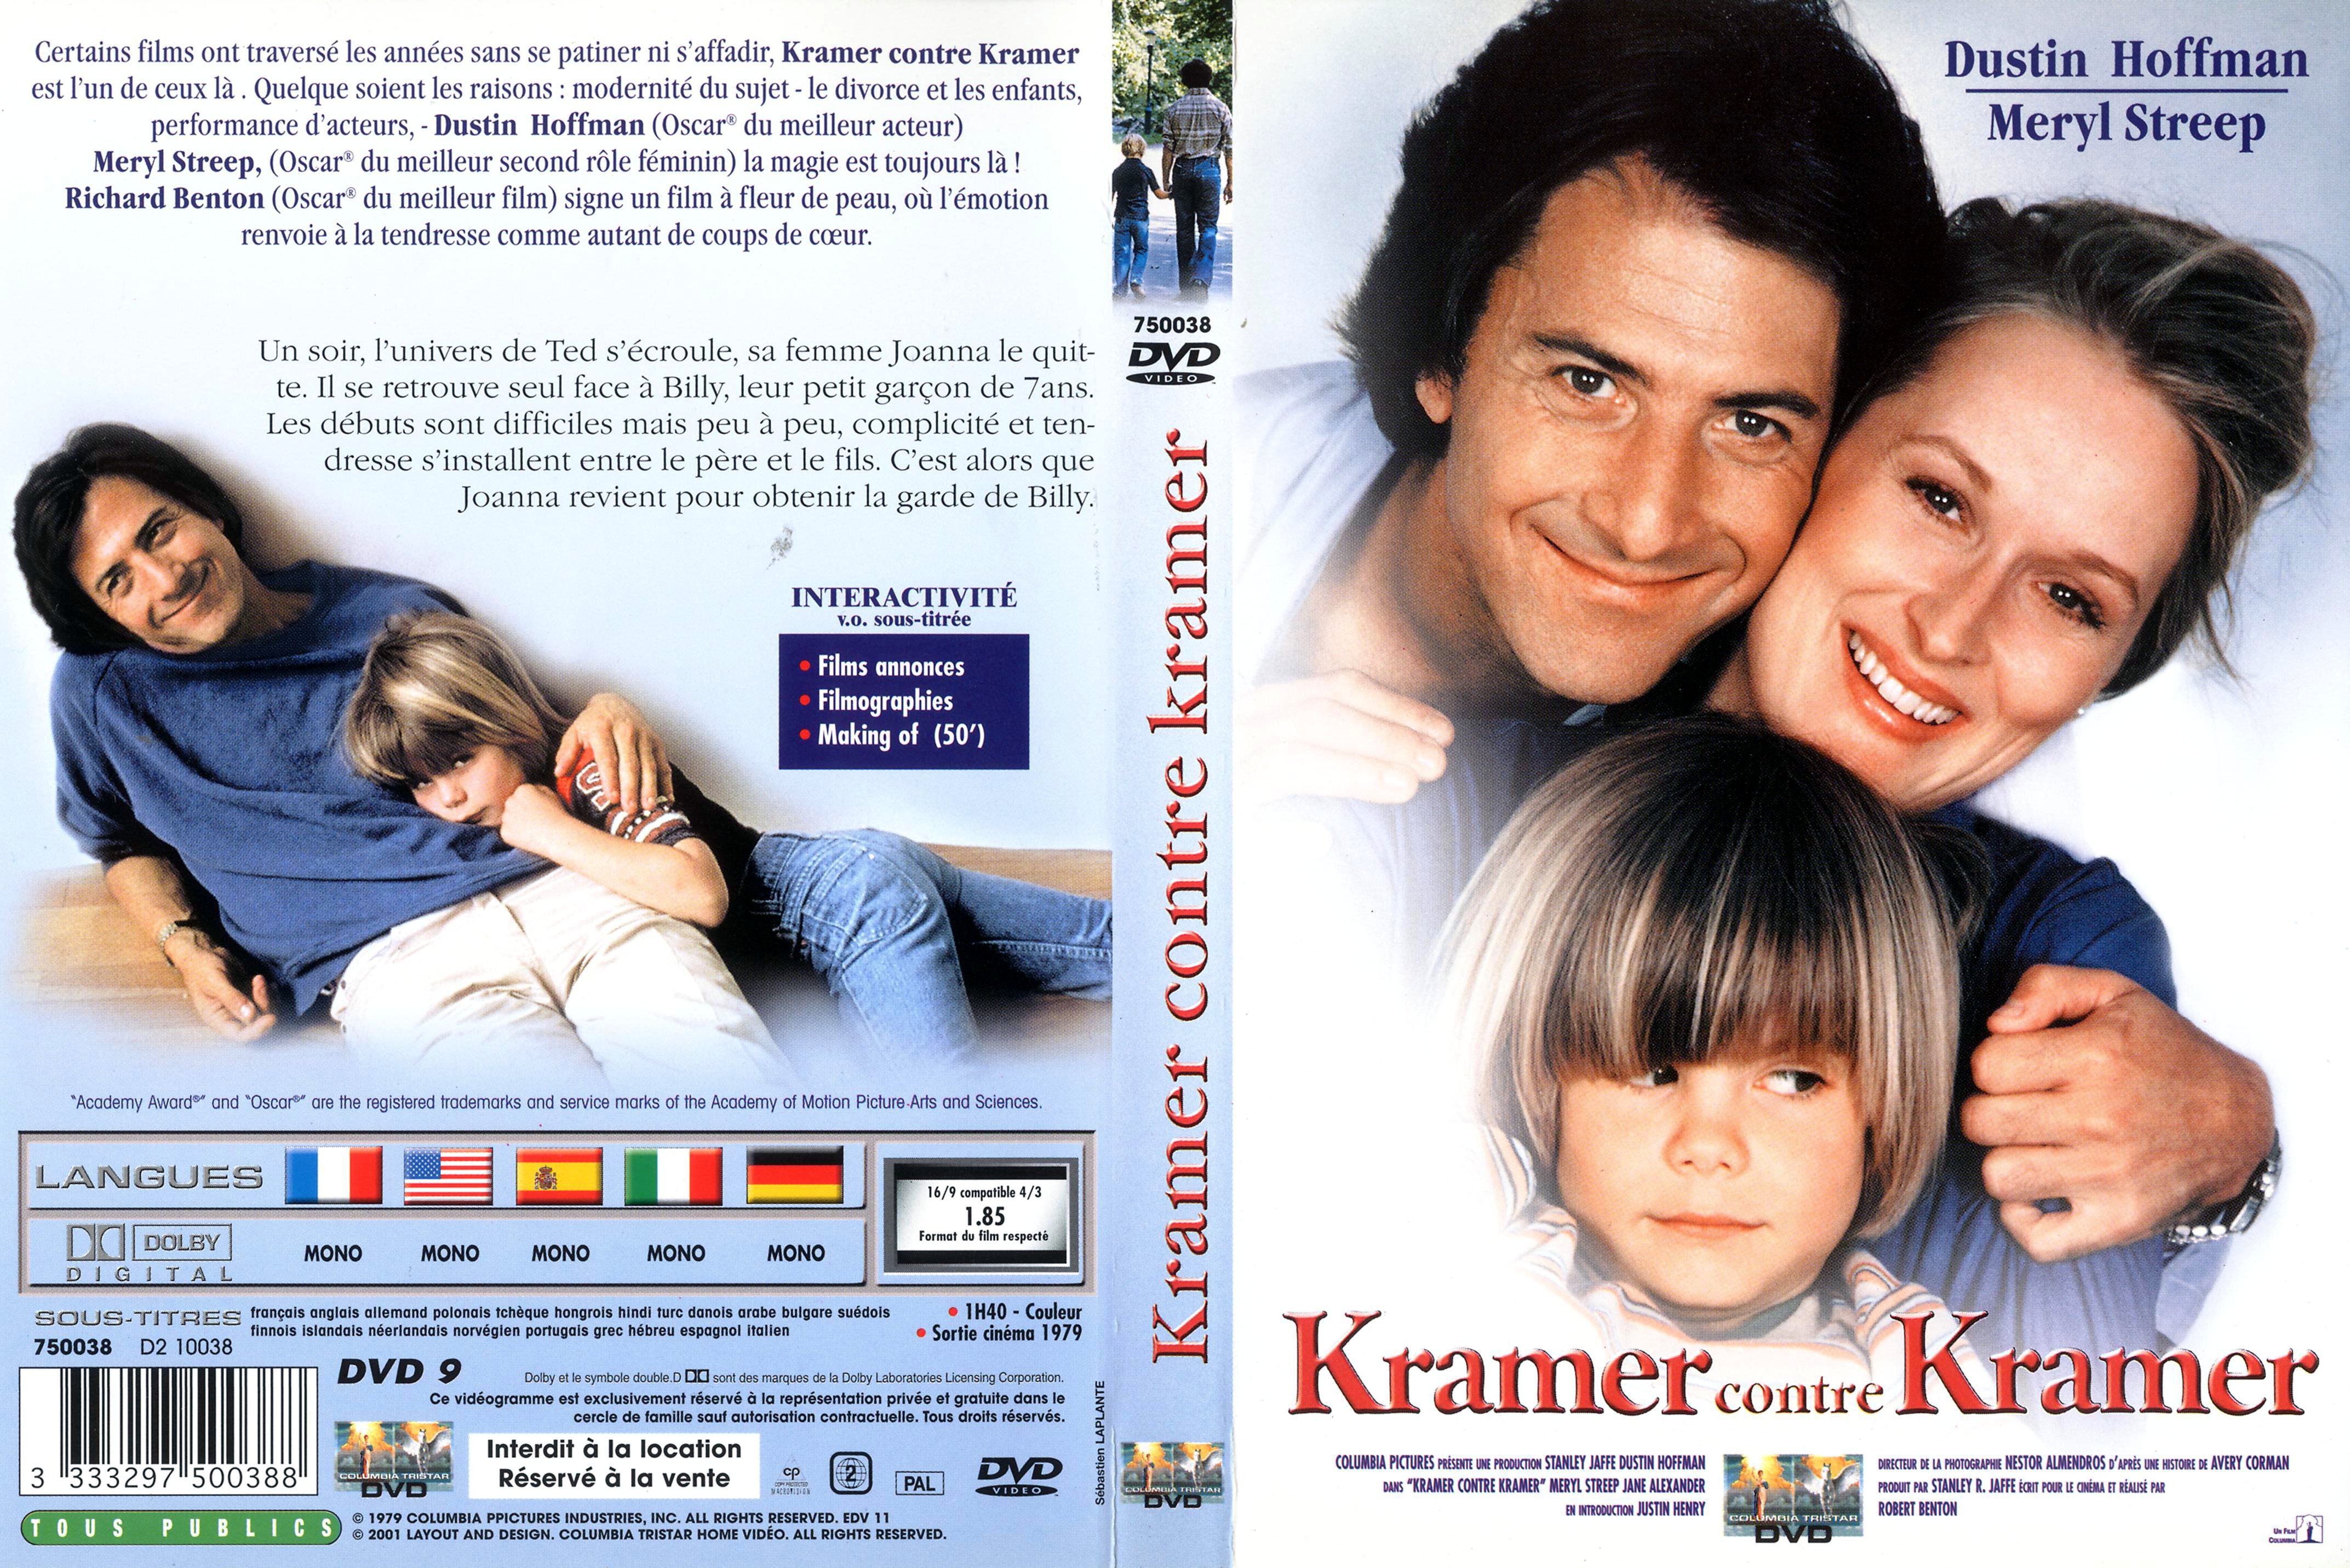 Jaquette DVD Kramer contre Kramer v2